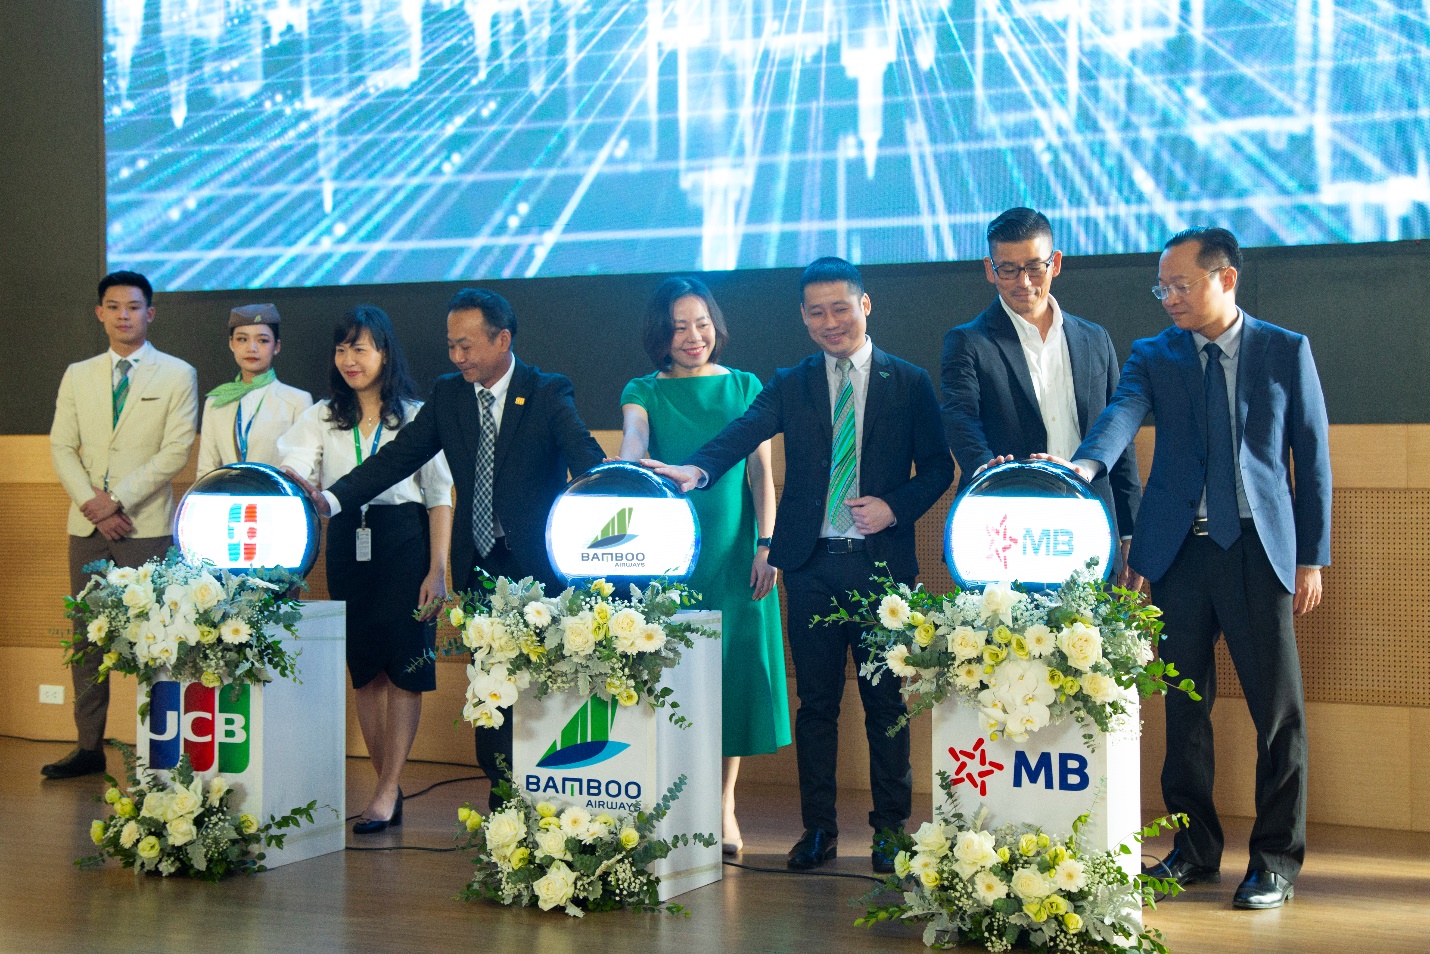 Bamboo Airways cùng JCB và MB ra mắt thẻ tín dụng Bamboo Club JCB - Ảnh 2.